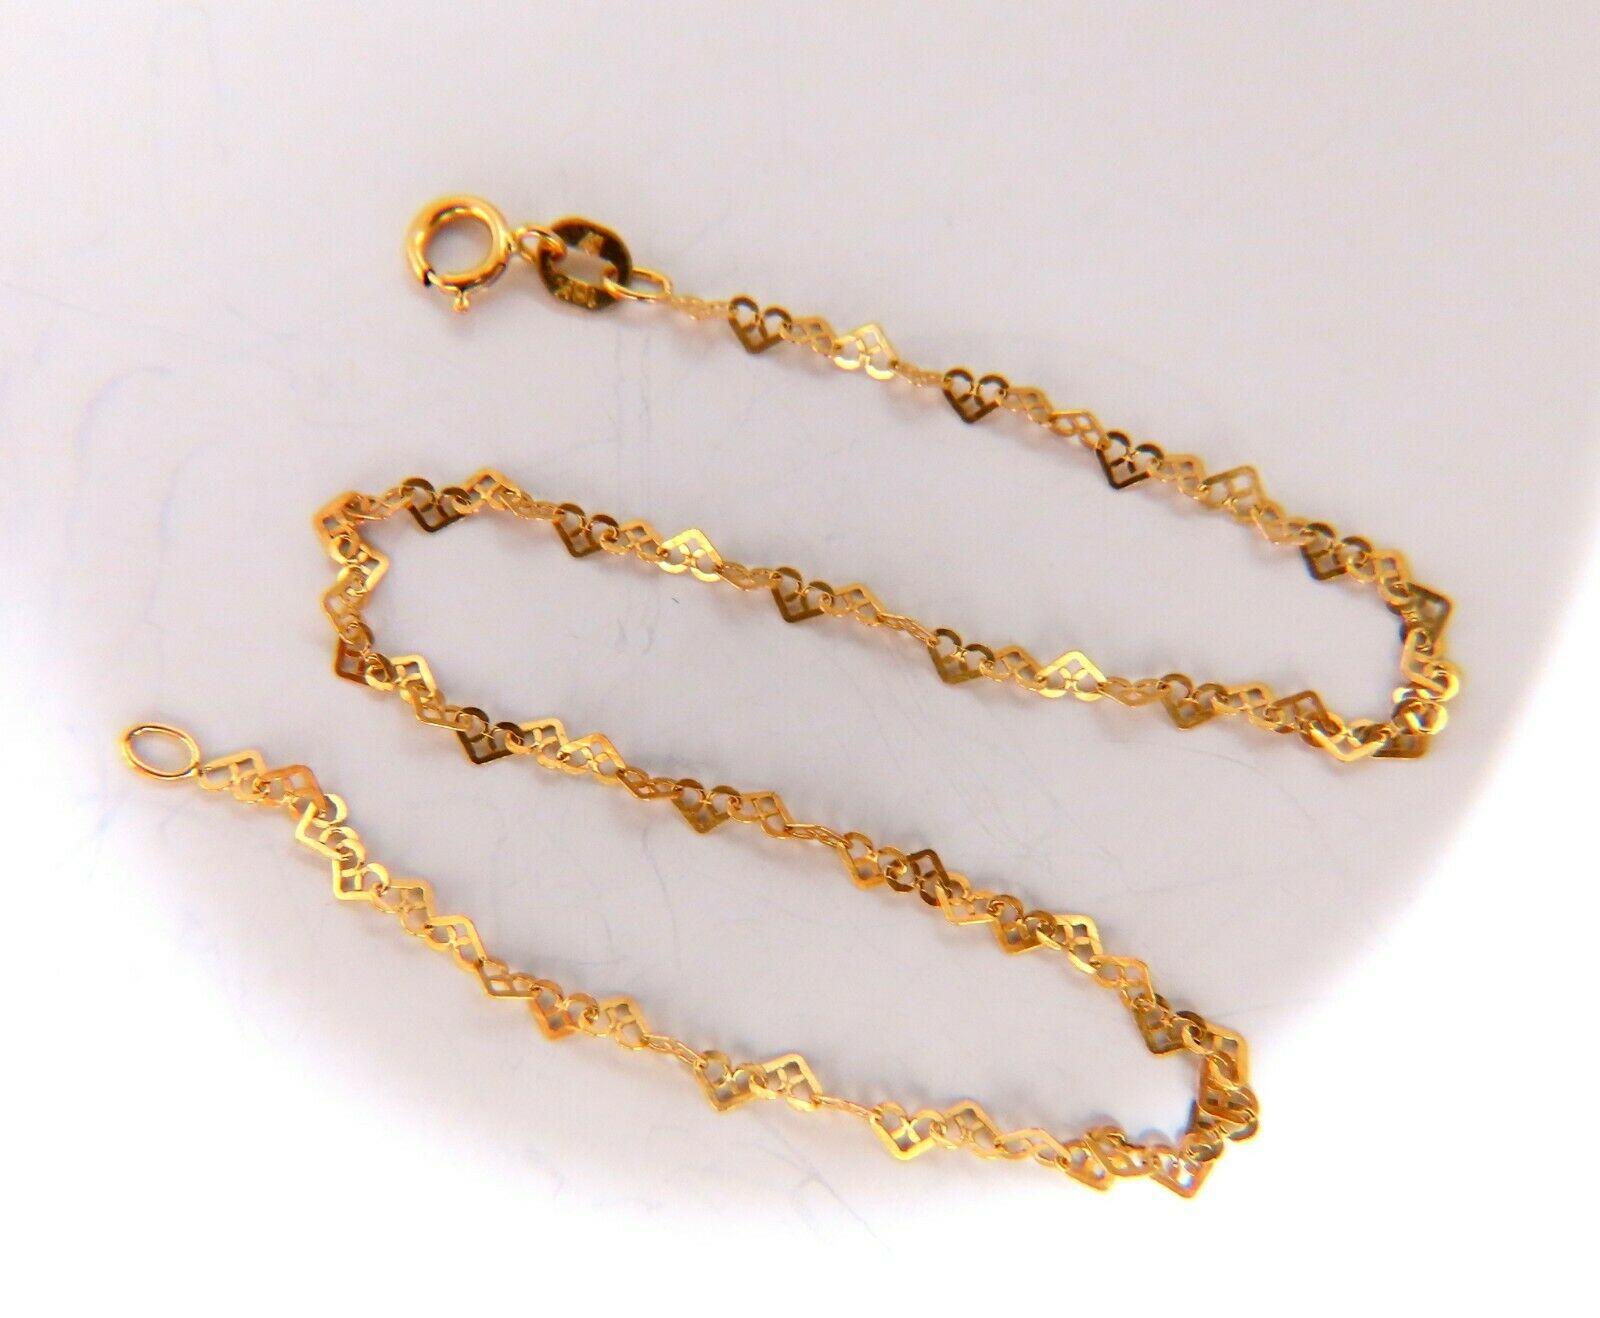 Open hearts link bracelet

2mm wide bracelet.

18 karat yellow gold 1.01 grams

Chain measure 9 inch

Secure lock